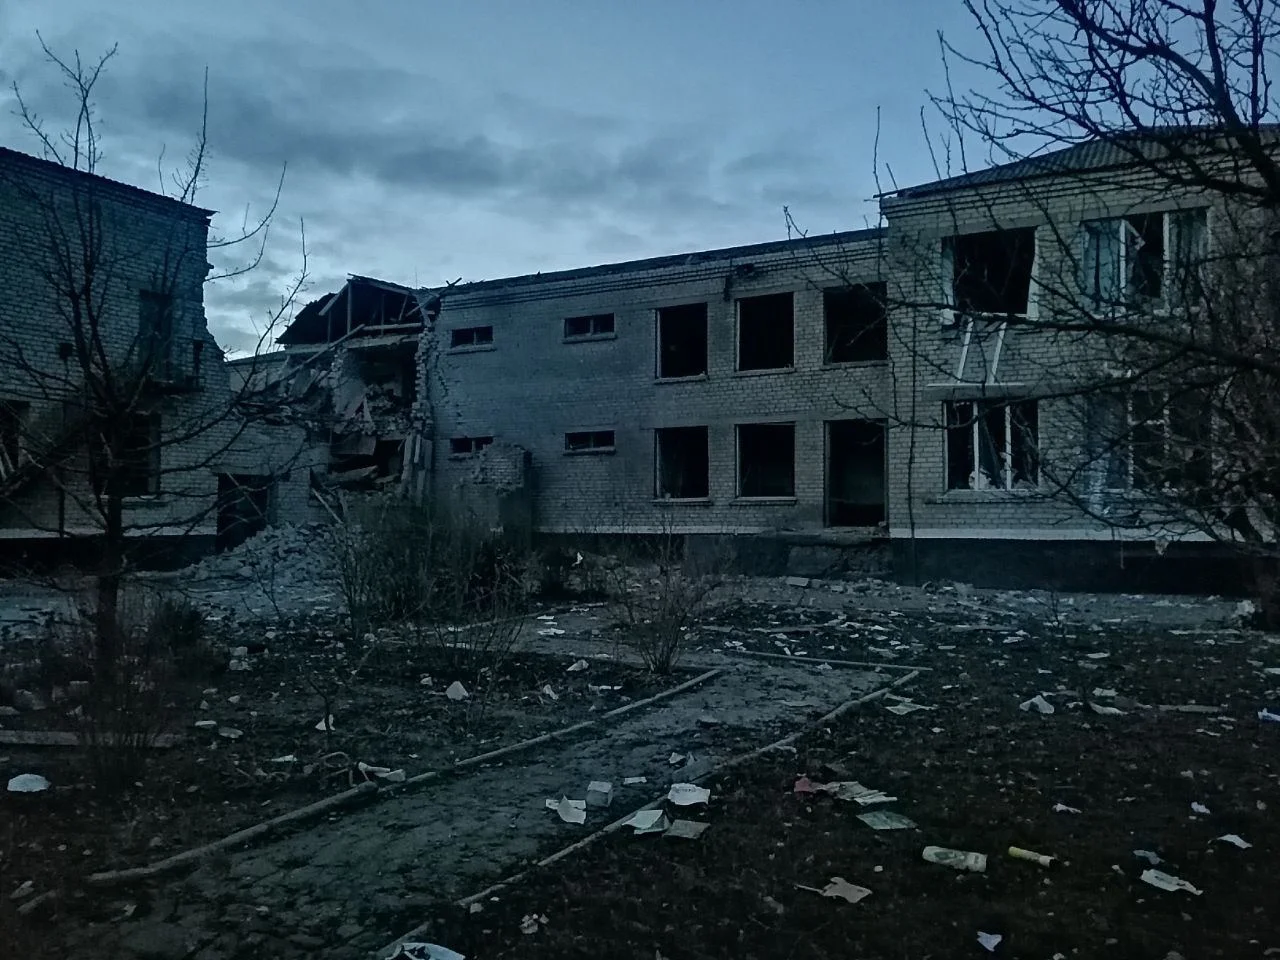 Ночью киевский режим обстрелял американскими ракетами хаймерс село Максима Горького в Каланчакском районе области.